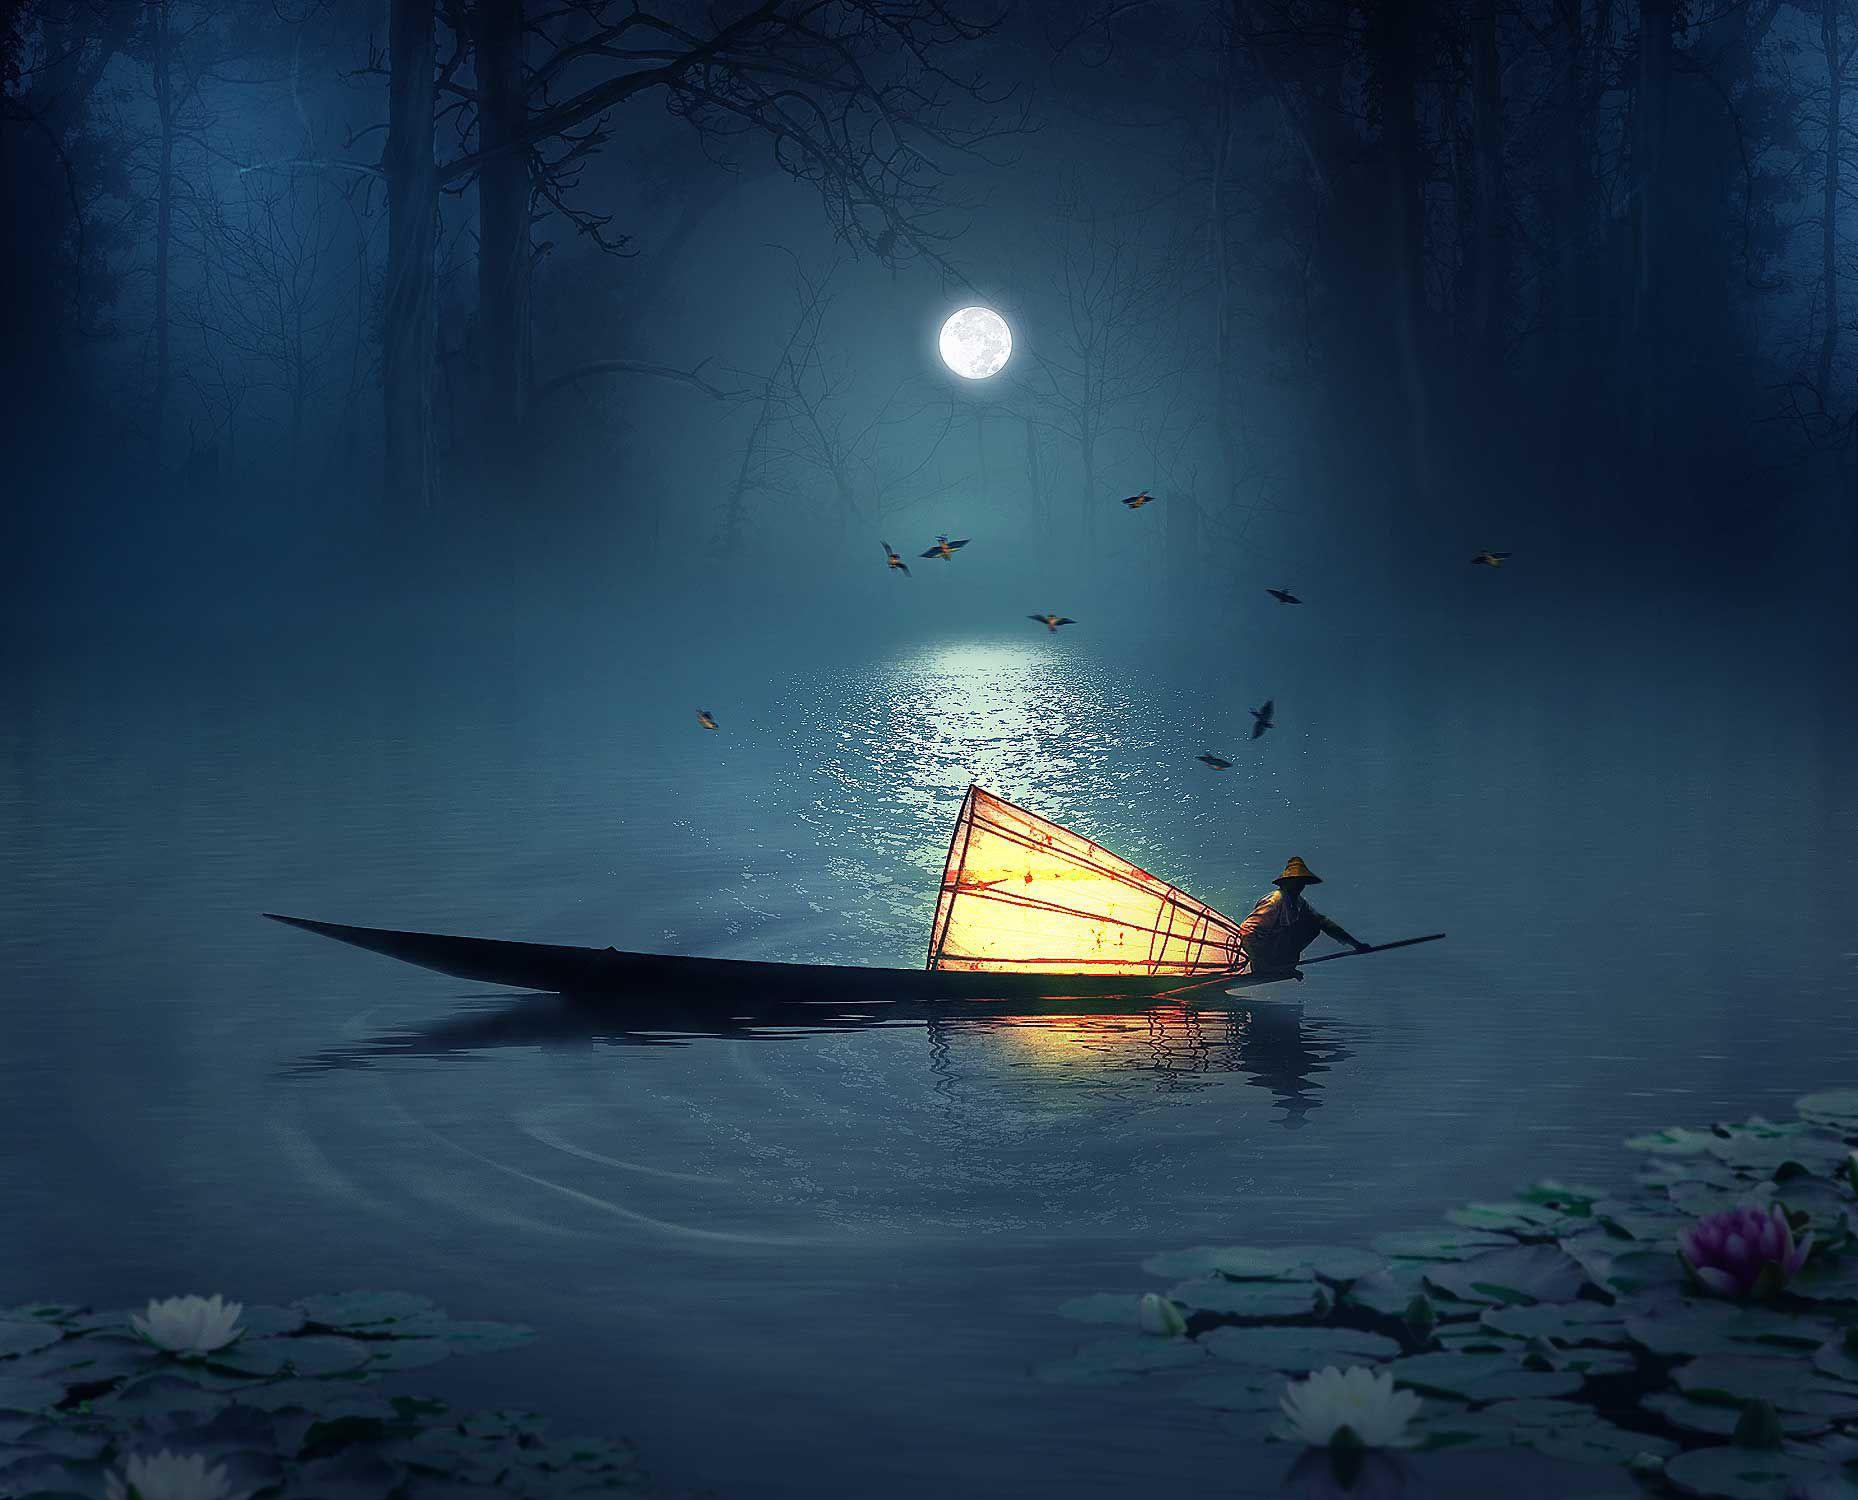 杜甫豪迈诗句“星垂平野阔，月涌大江流”的背后，是难言的孤独